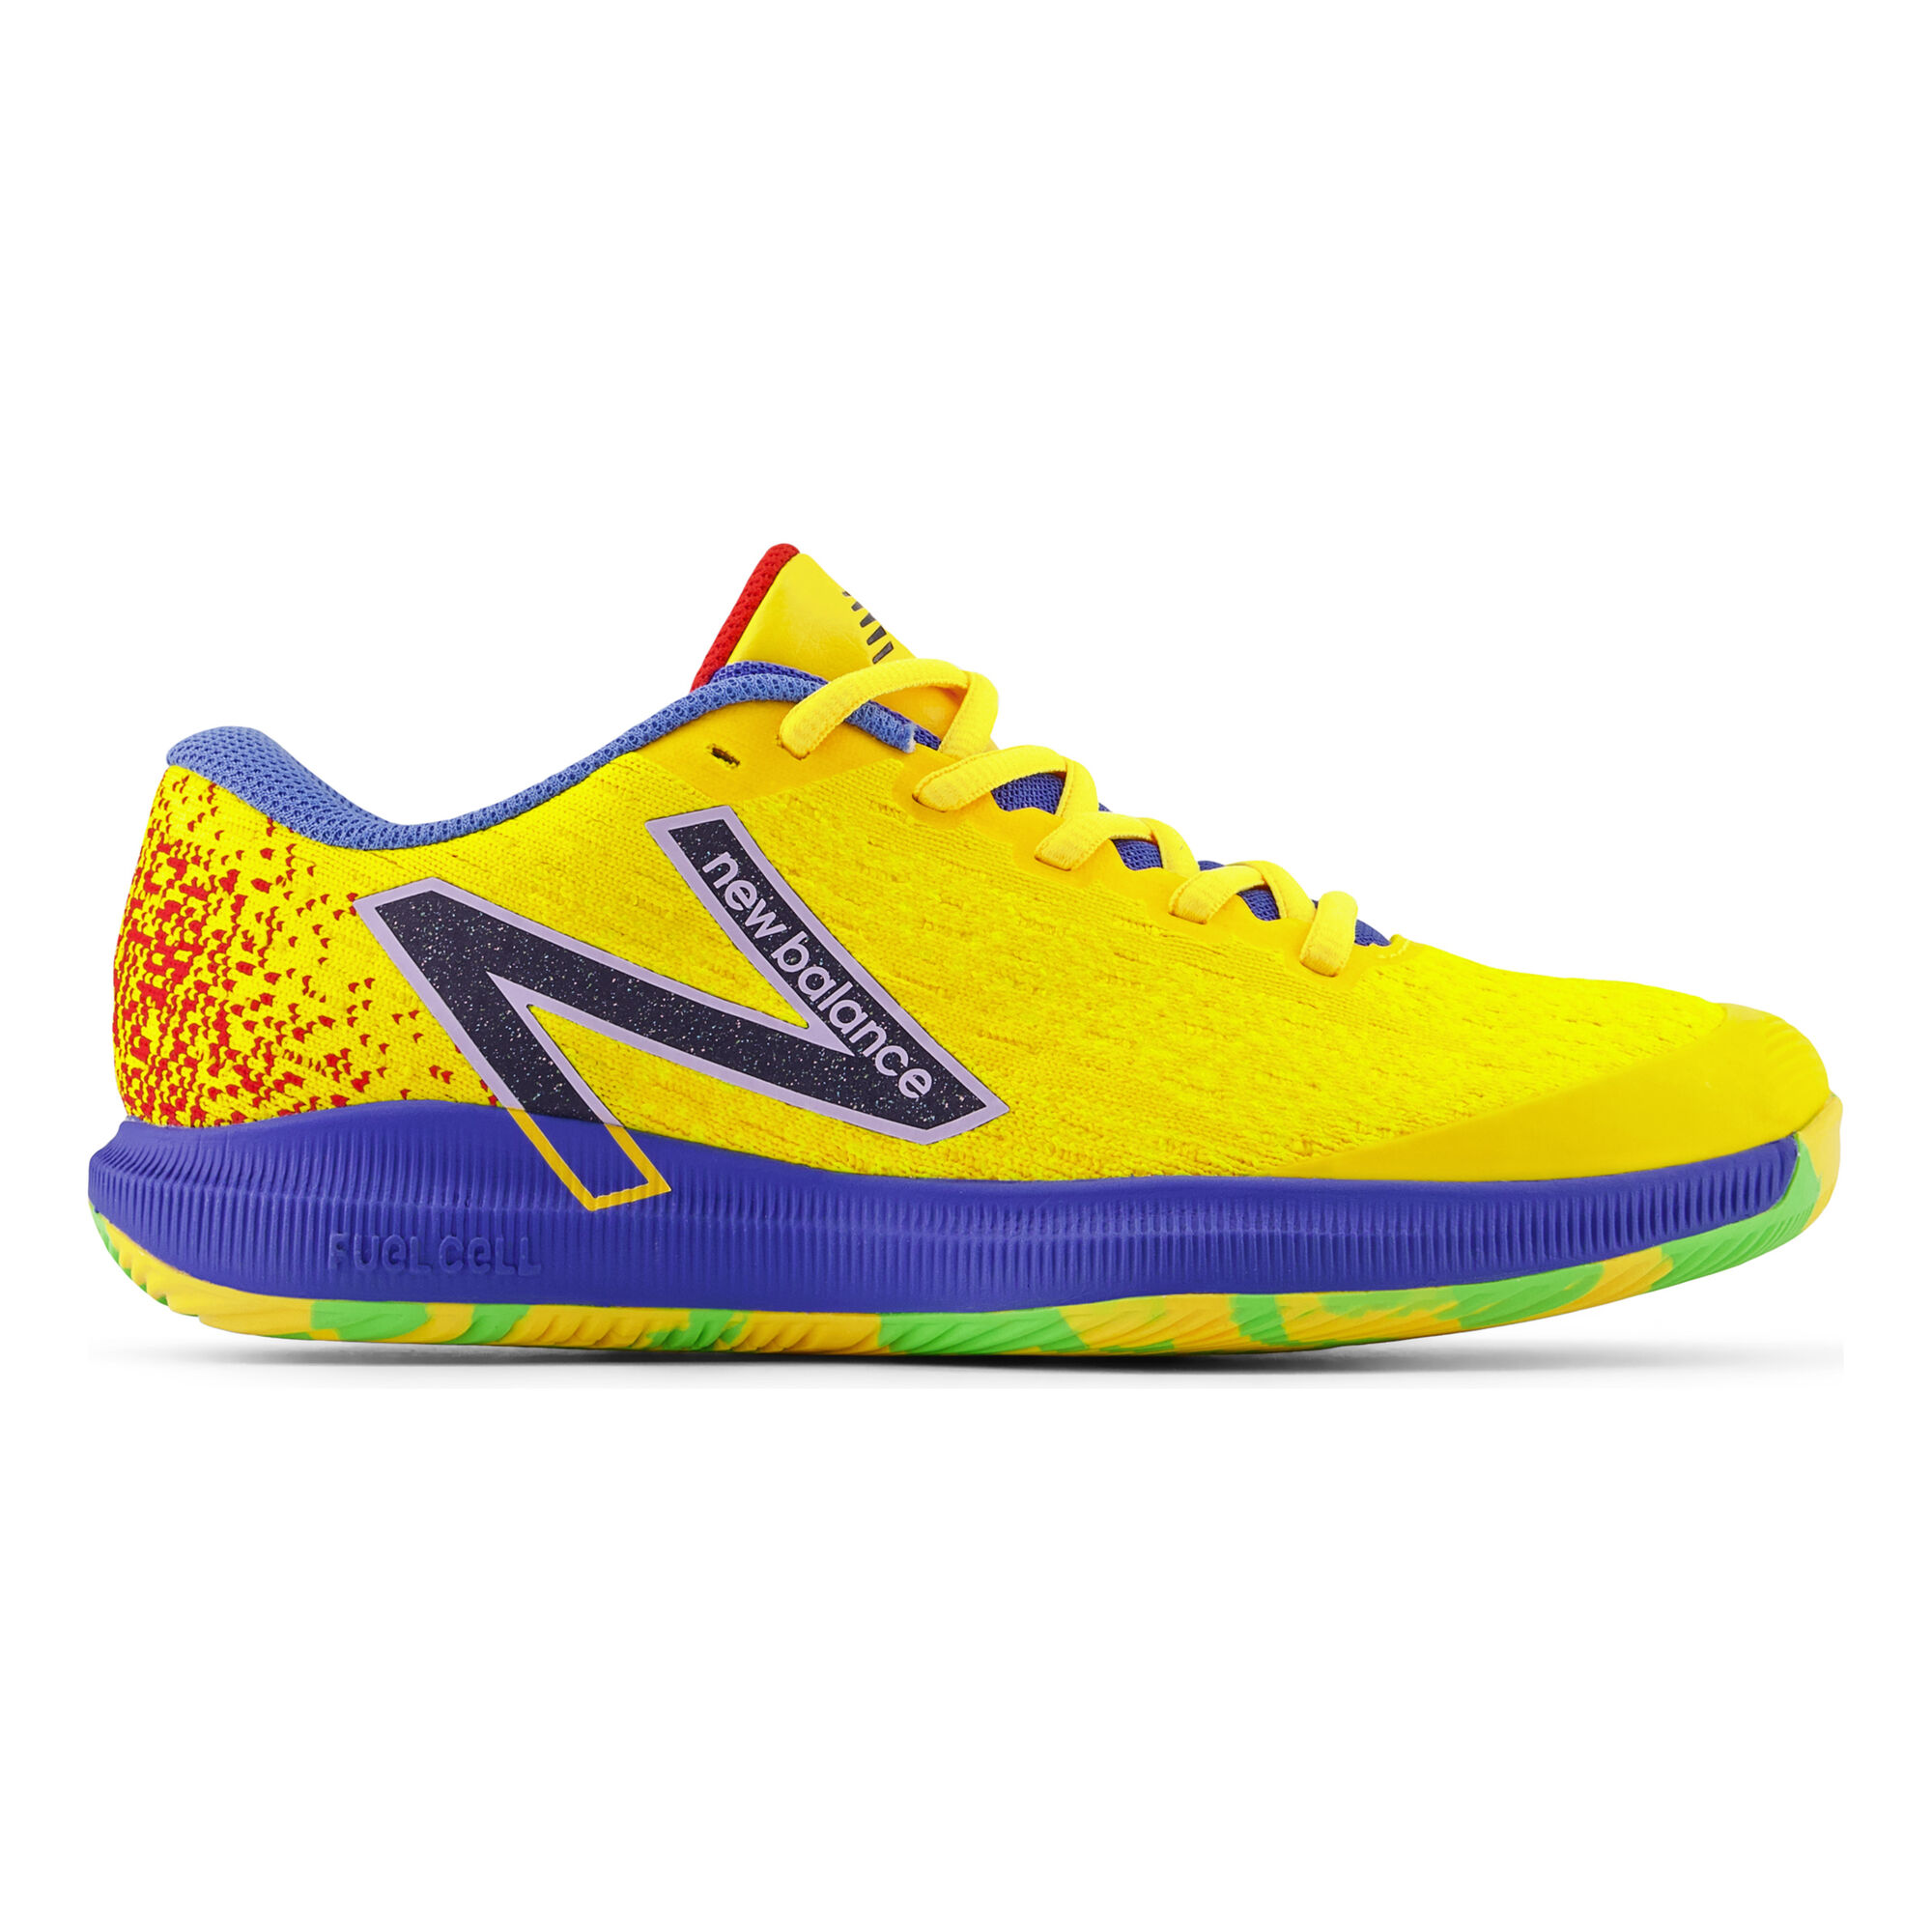 Netelig Haarvaten Laatste buy New Balance 996 All Court Shoe Women - Yellow, Blue online |  Tennis-Point